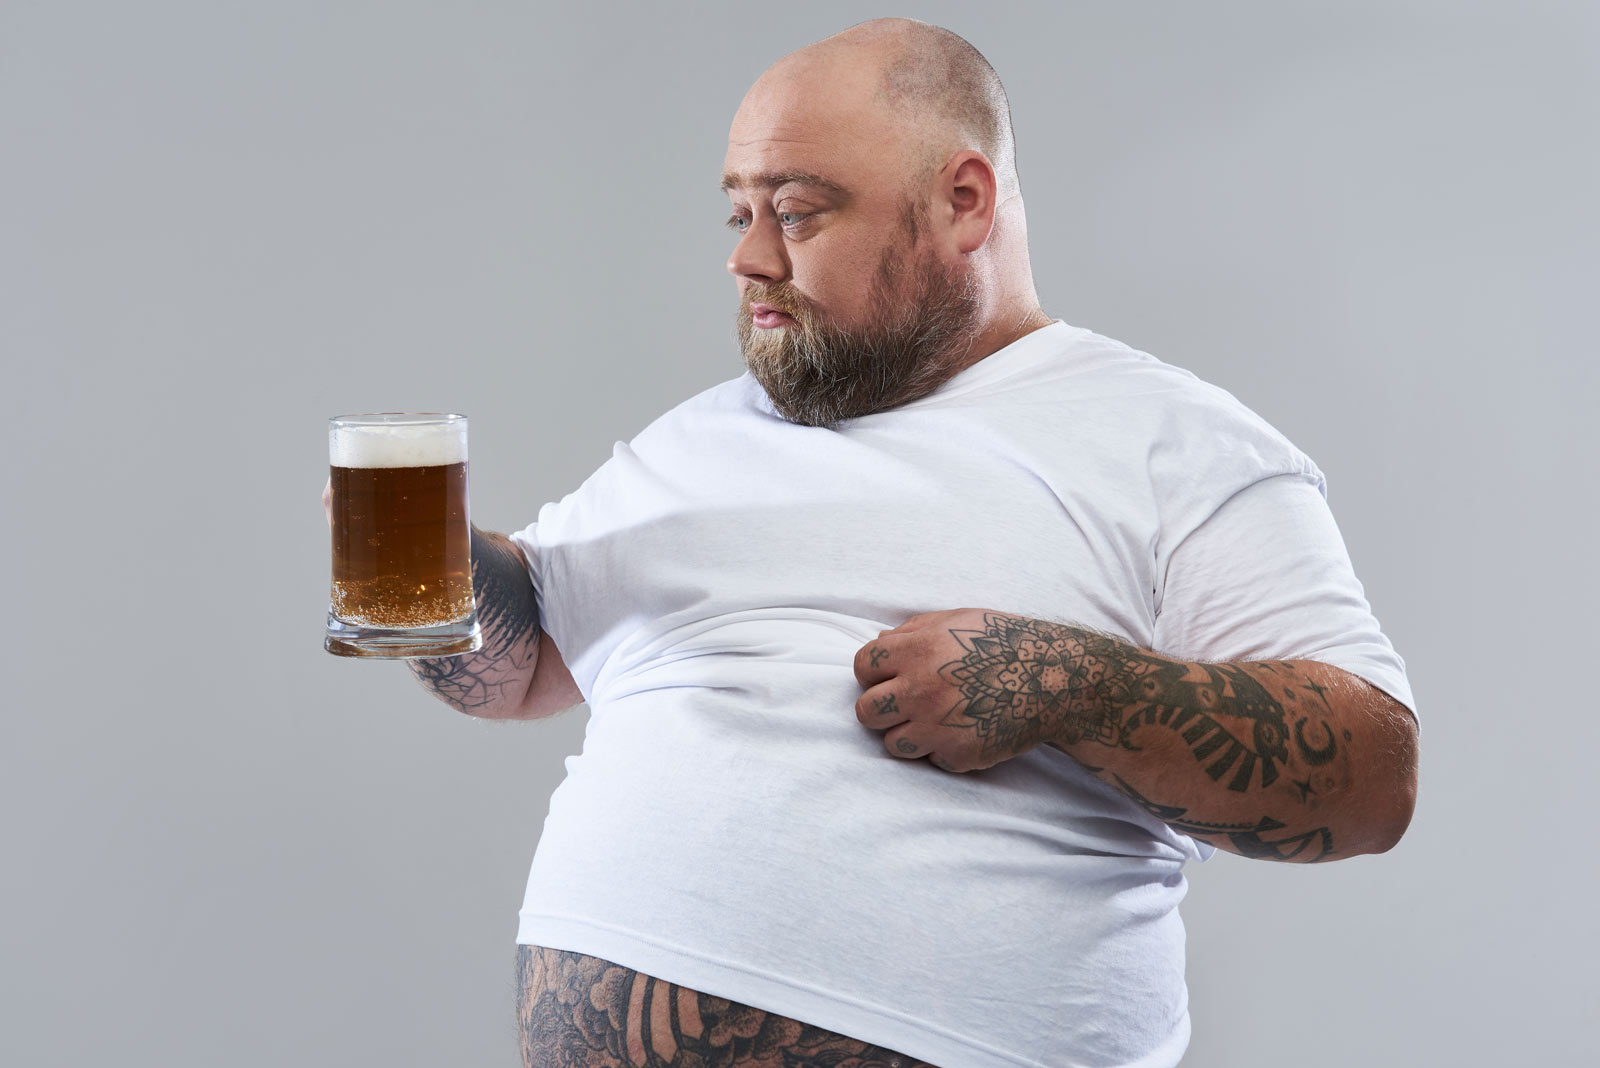 Ein korpulenter Mann schaut fragend ein Bier an